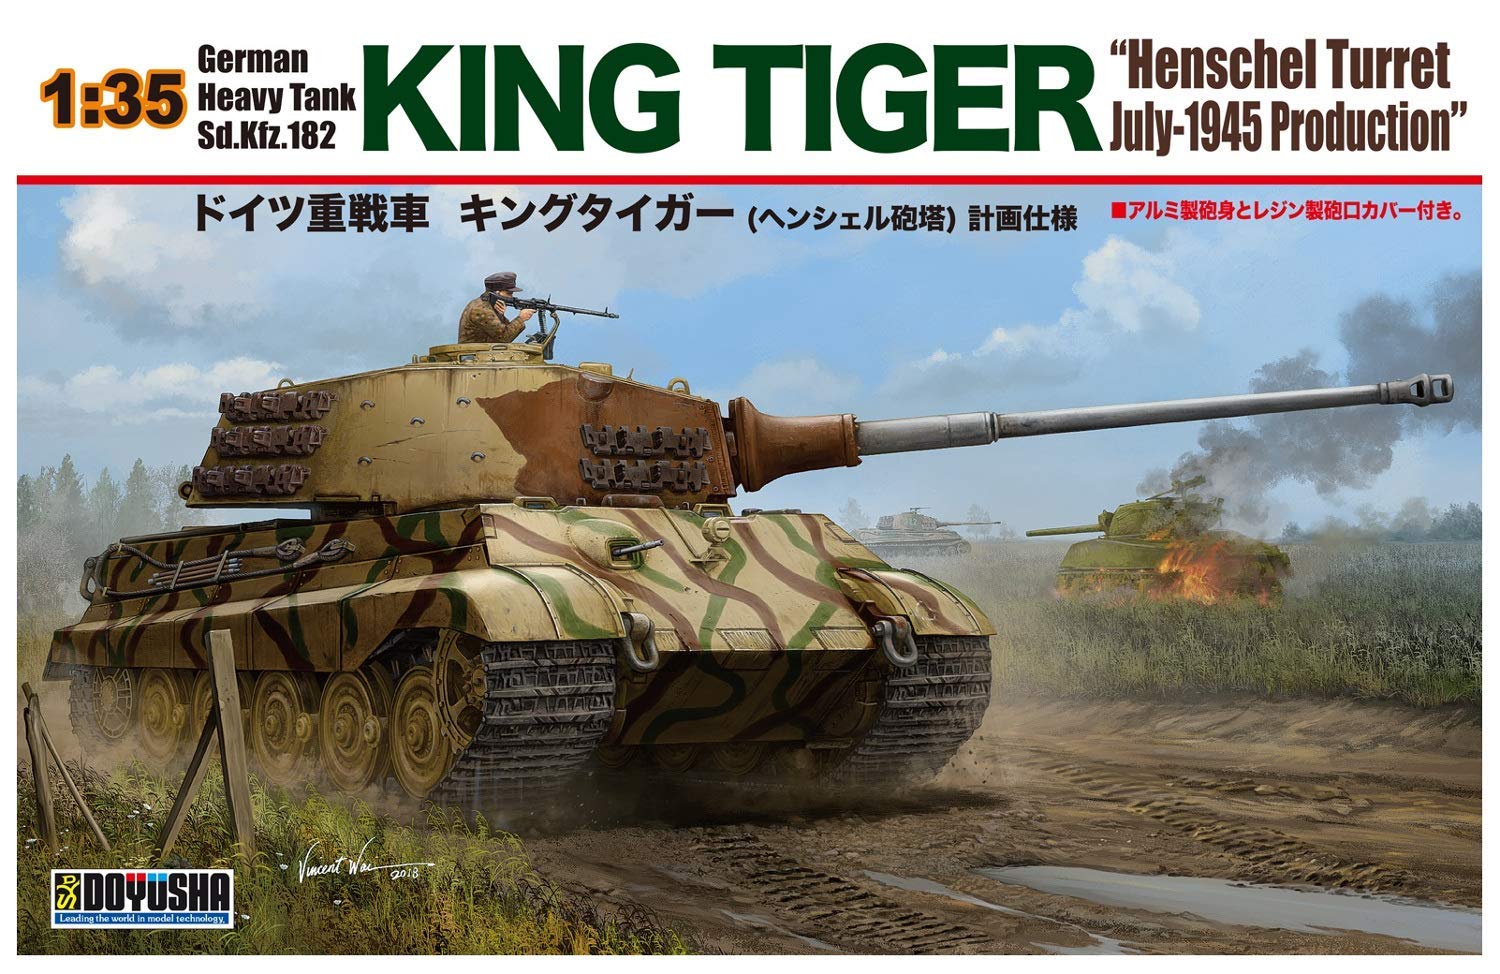 German King Tiger (Henschel Turret)